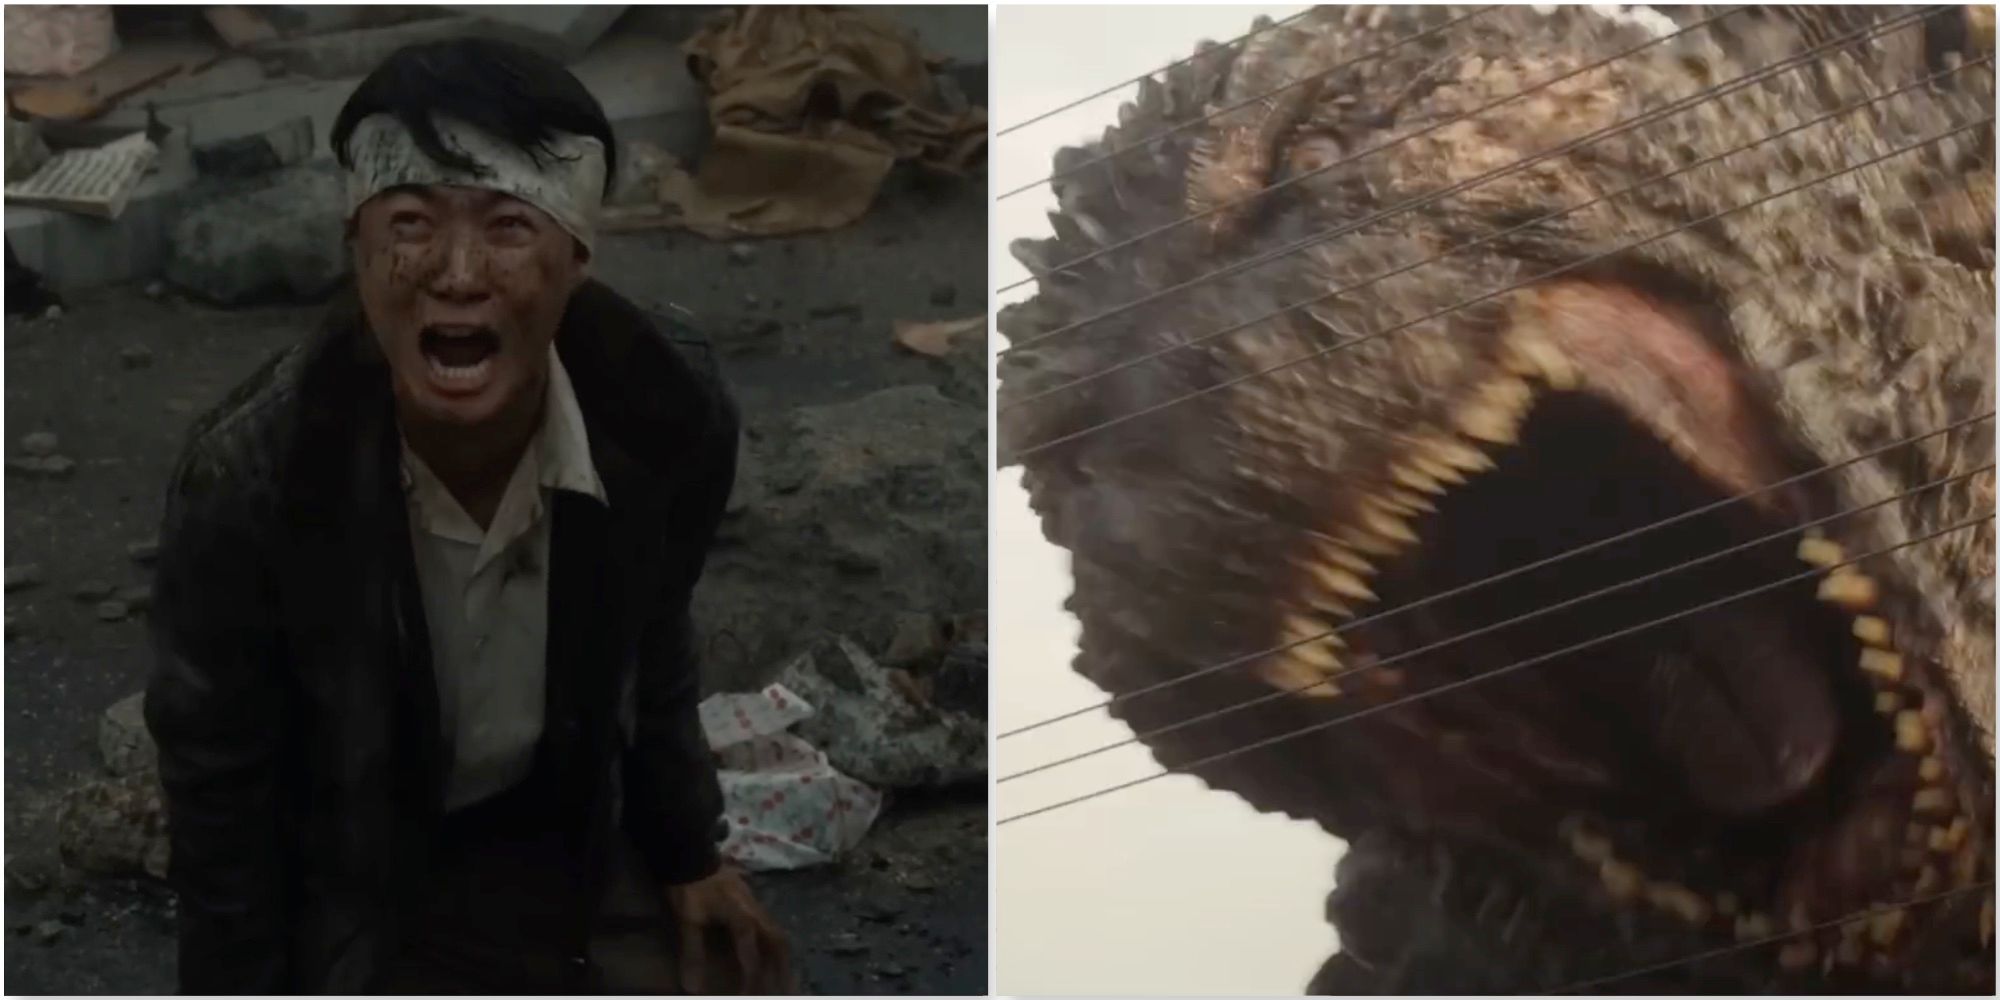 Koichi and Godzilla in Godzilla Minus One